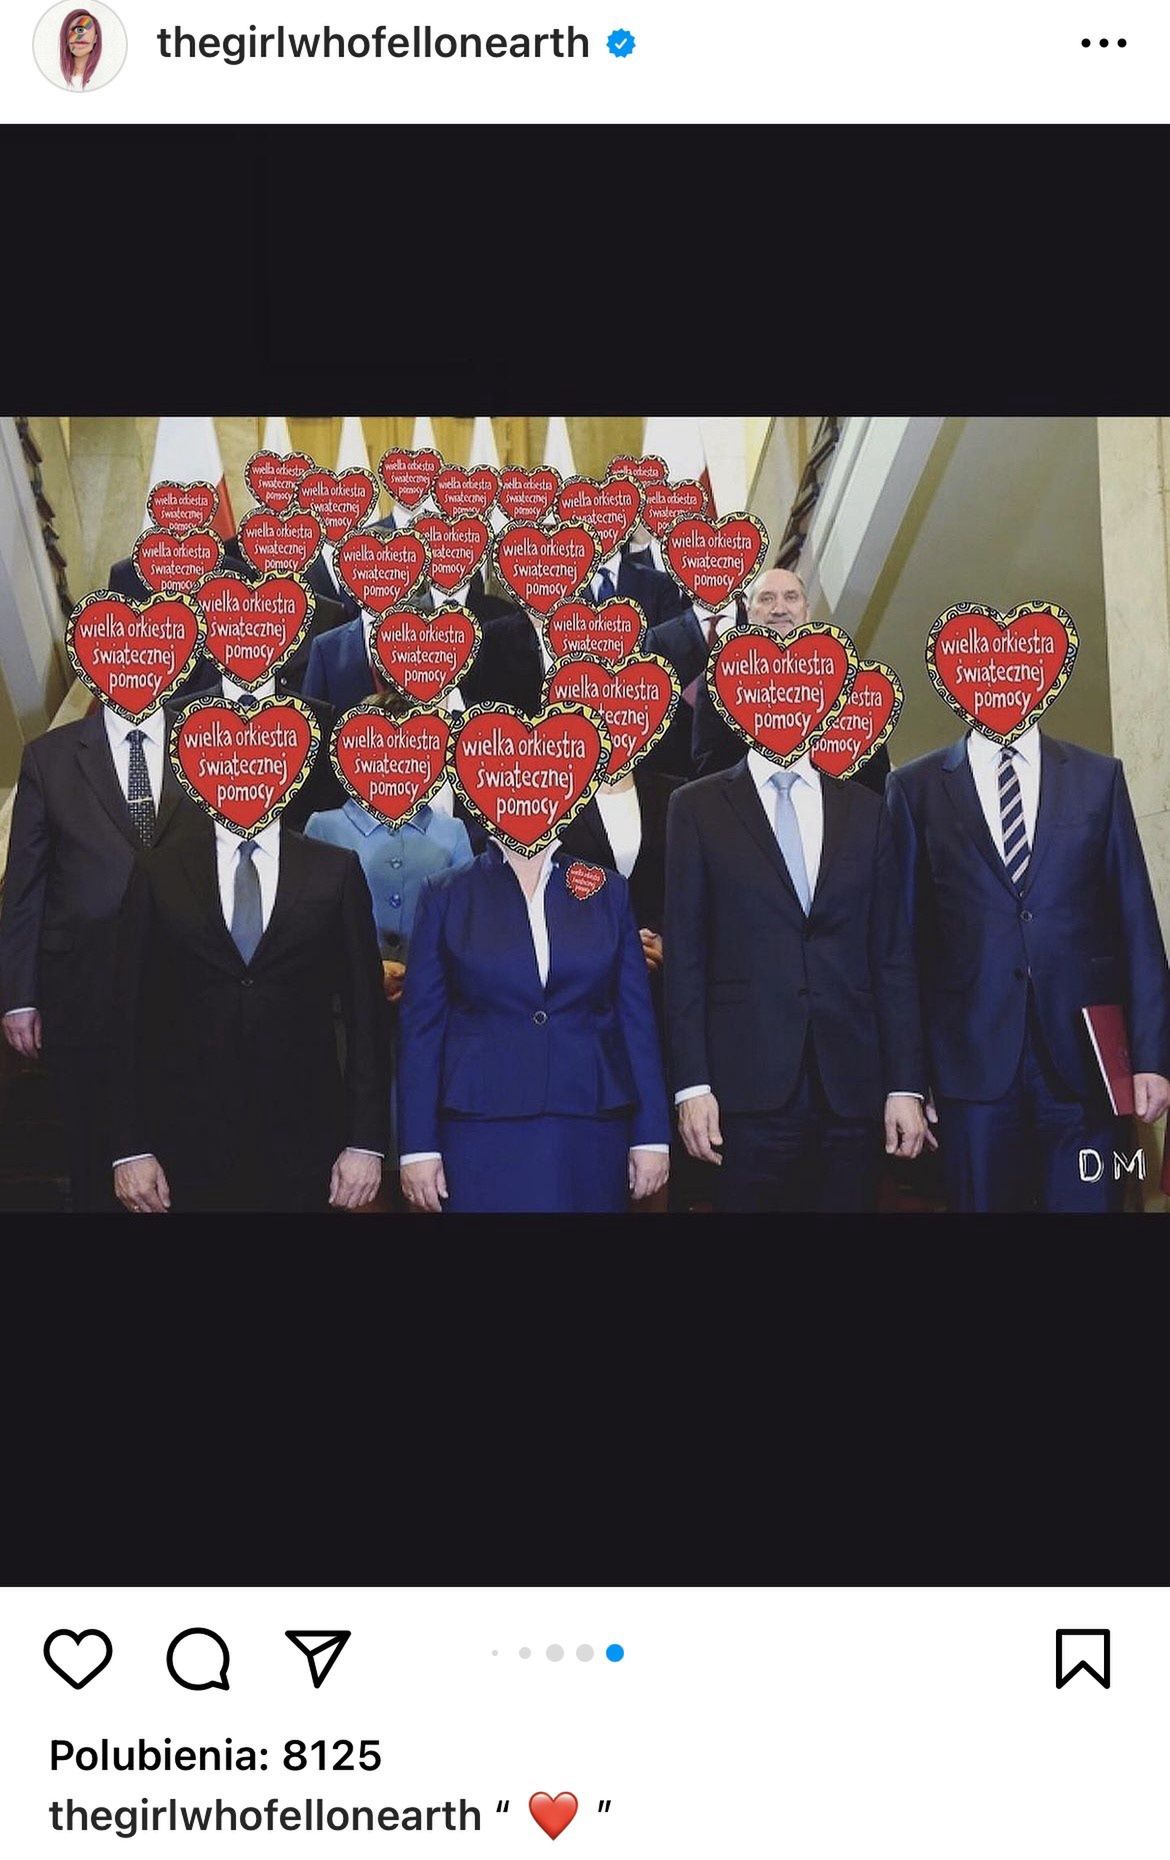 Matylda Damięcka przerobiła zdjęcie polityków PiS